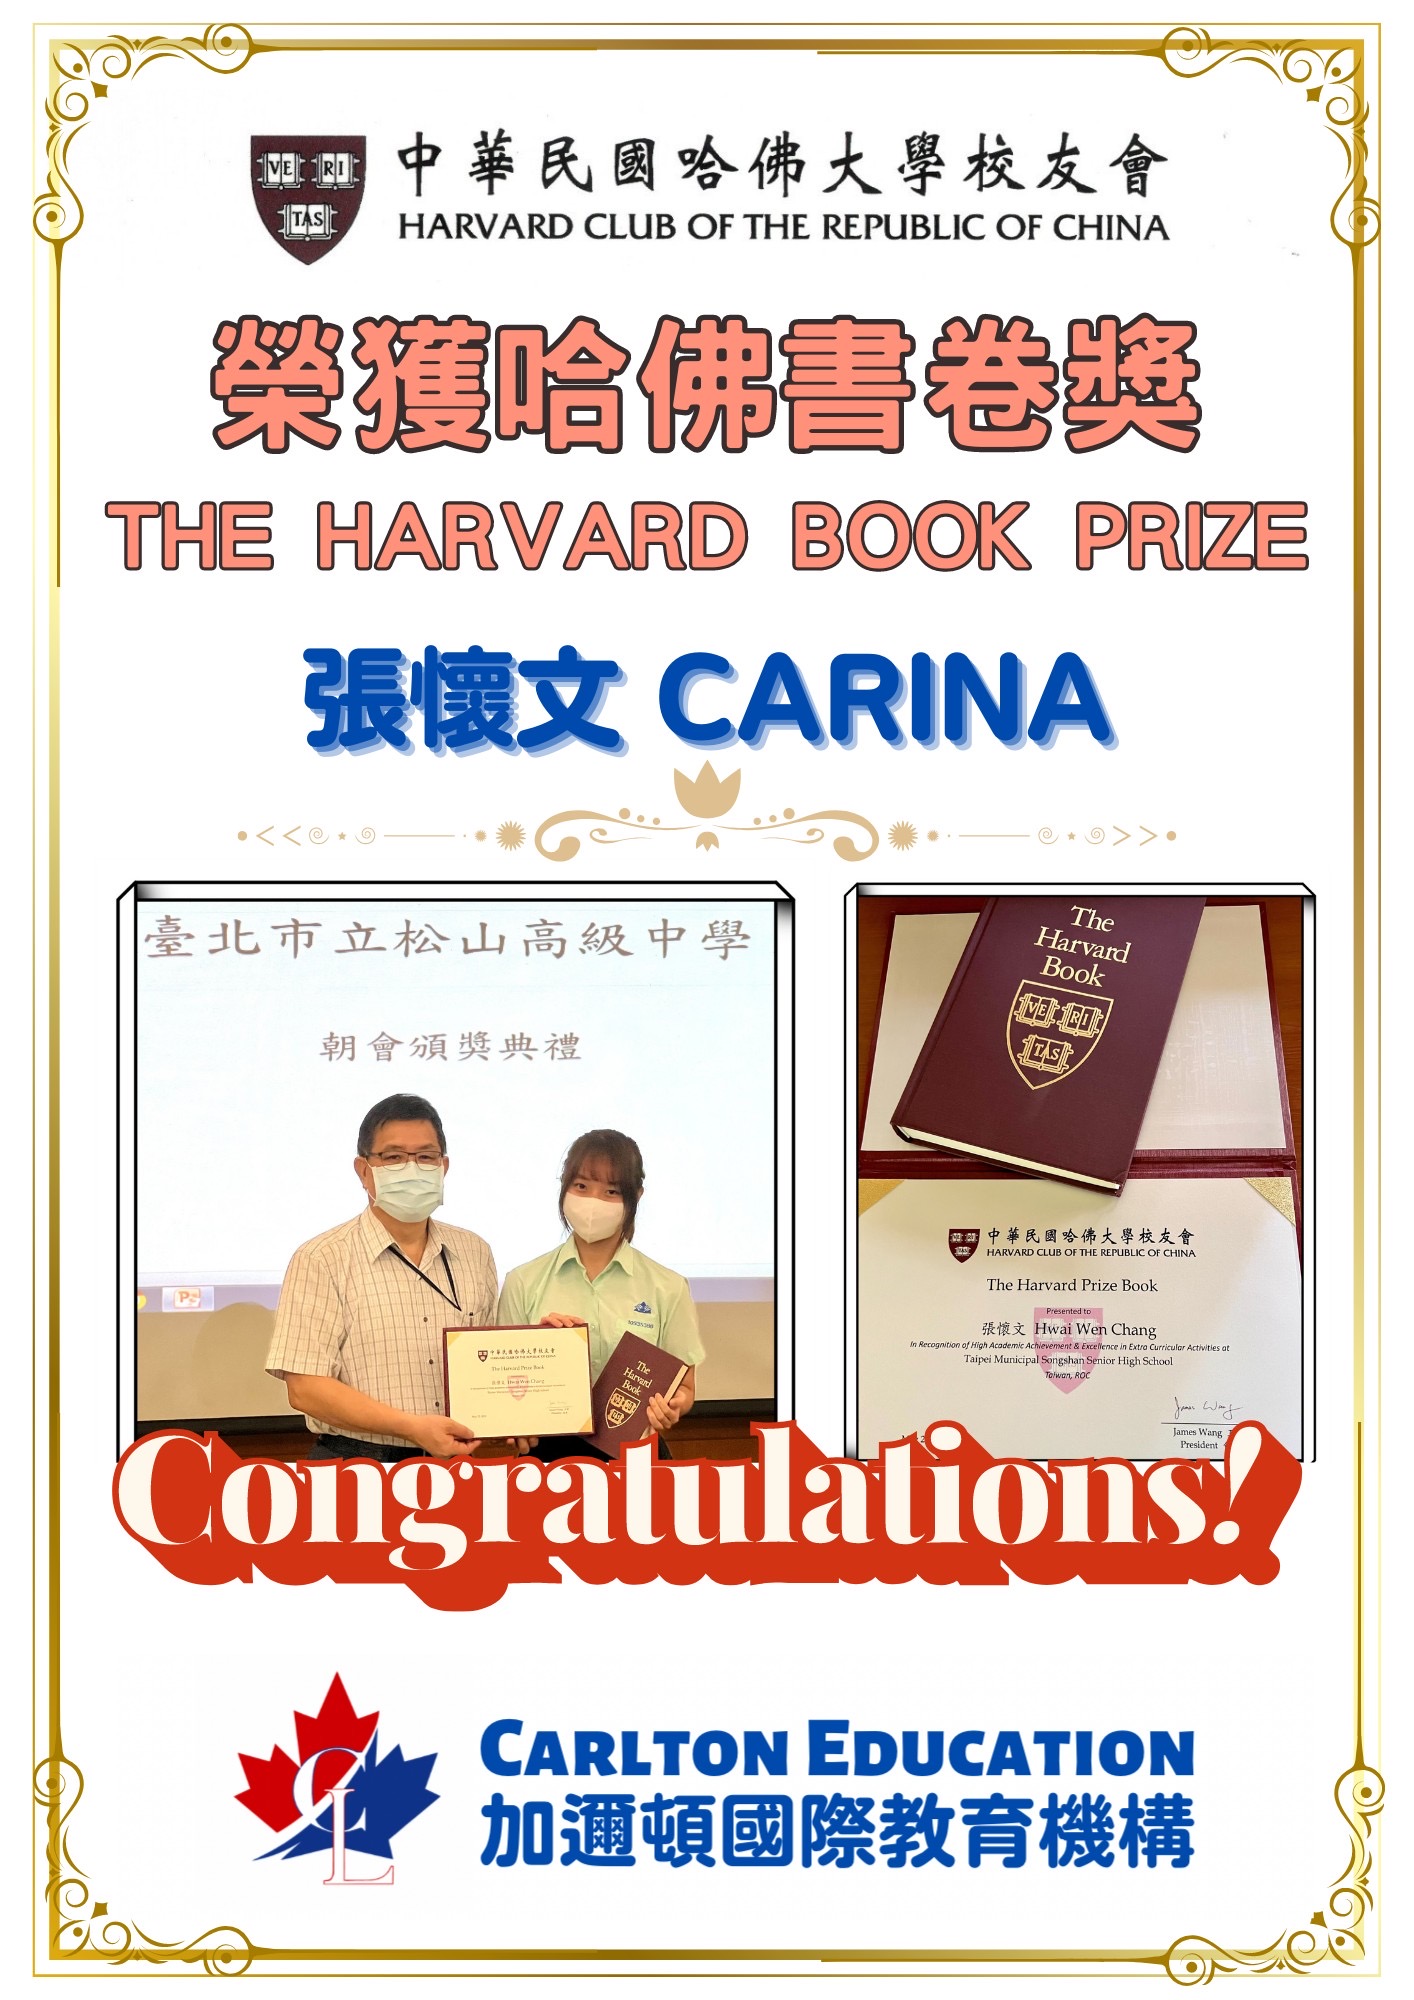 恭喜Carina 榮獲哈佛書卷獎THE HARVARD BOOK PRIZE